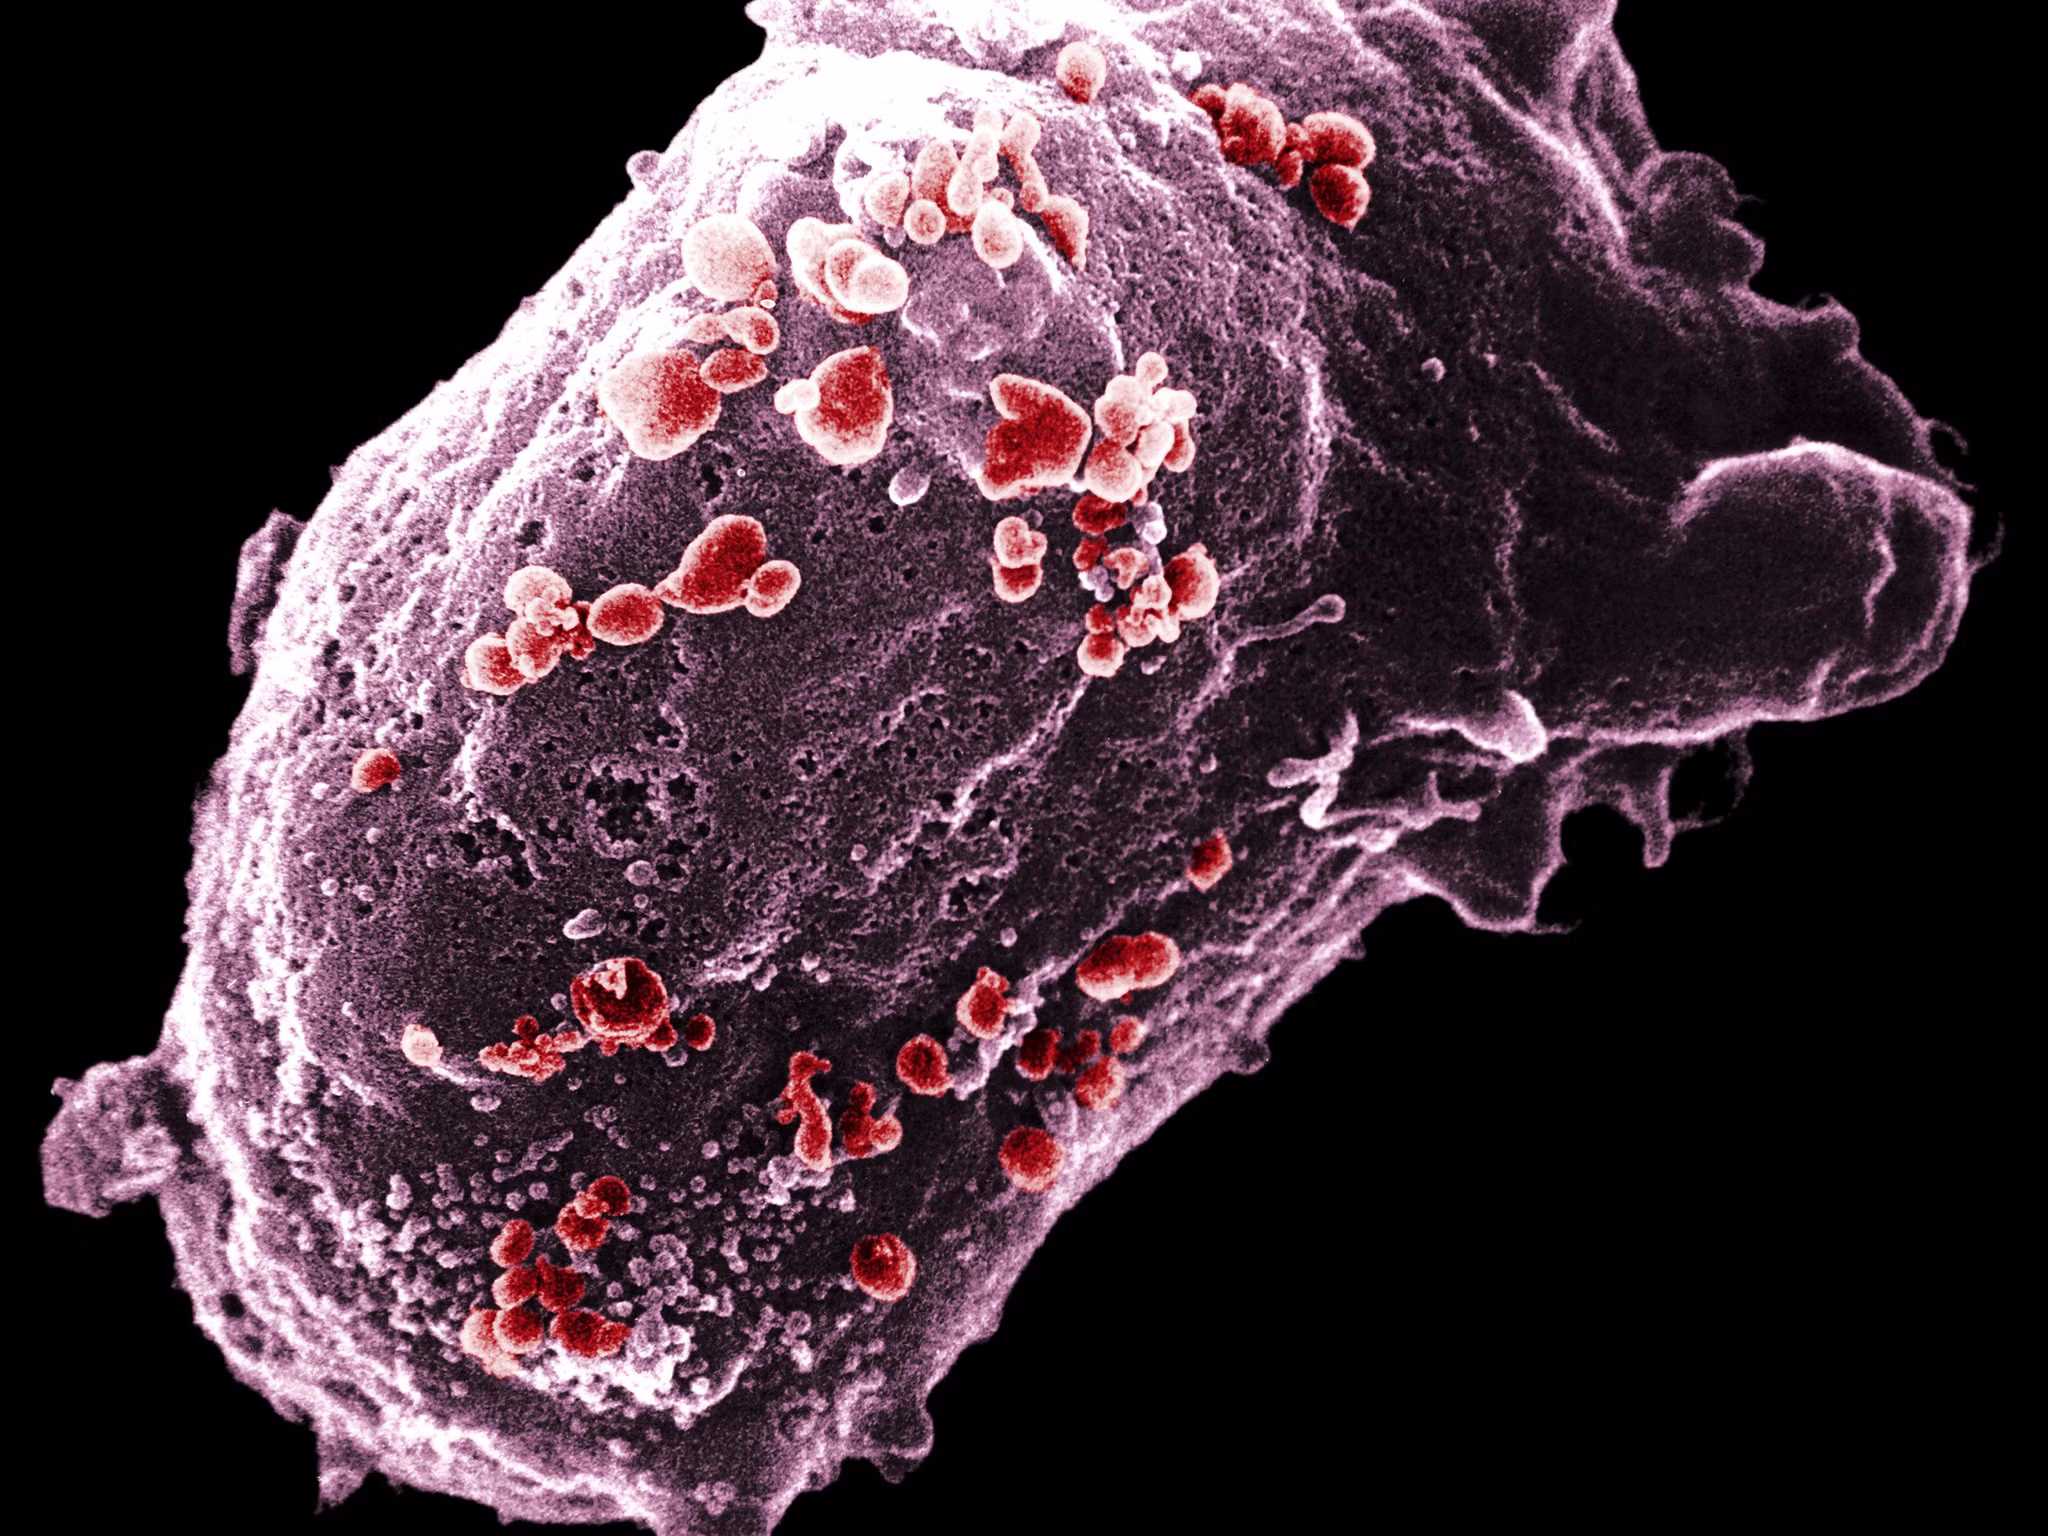 ВОЗ повысила уровень «непередаваемой» вирусной нагрузки ВИЧ до 1000 копий на миллилитр